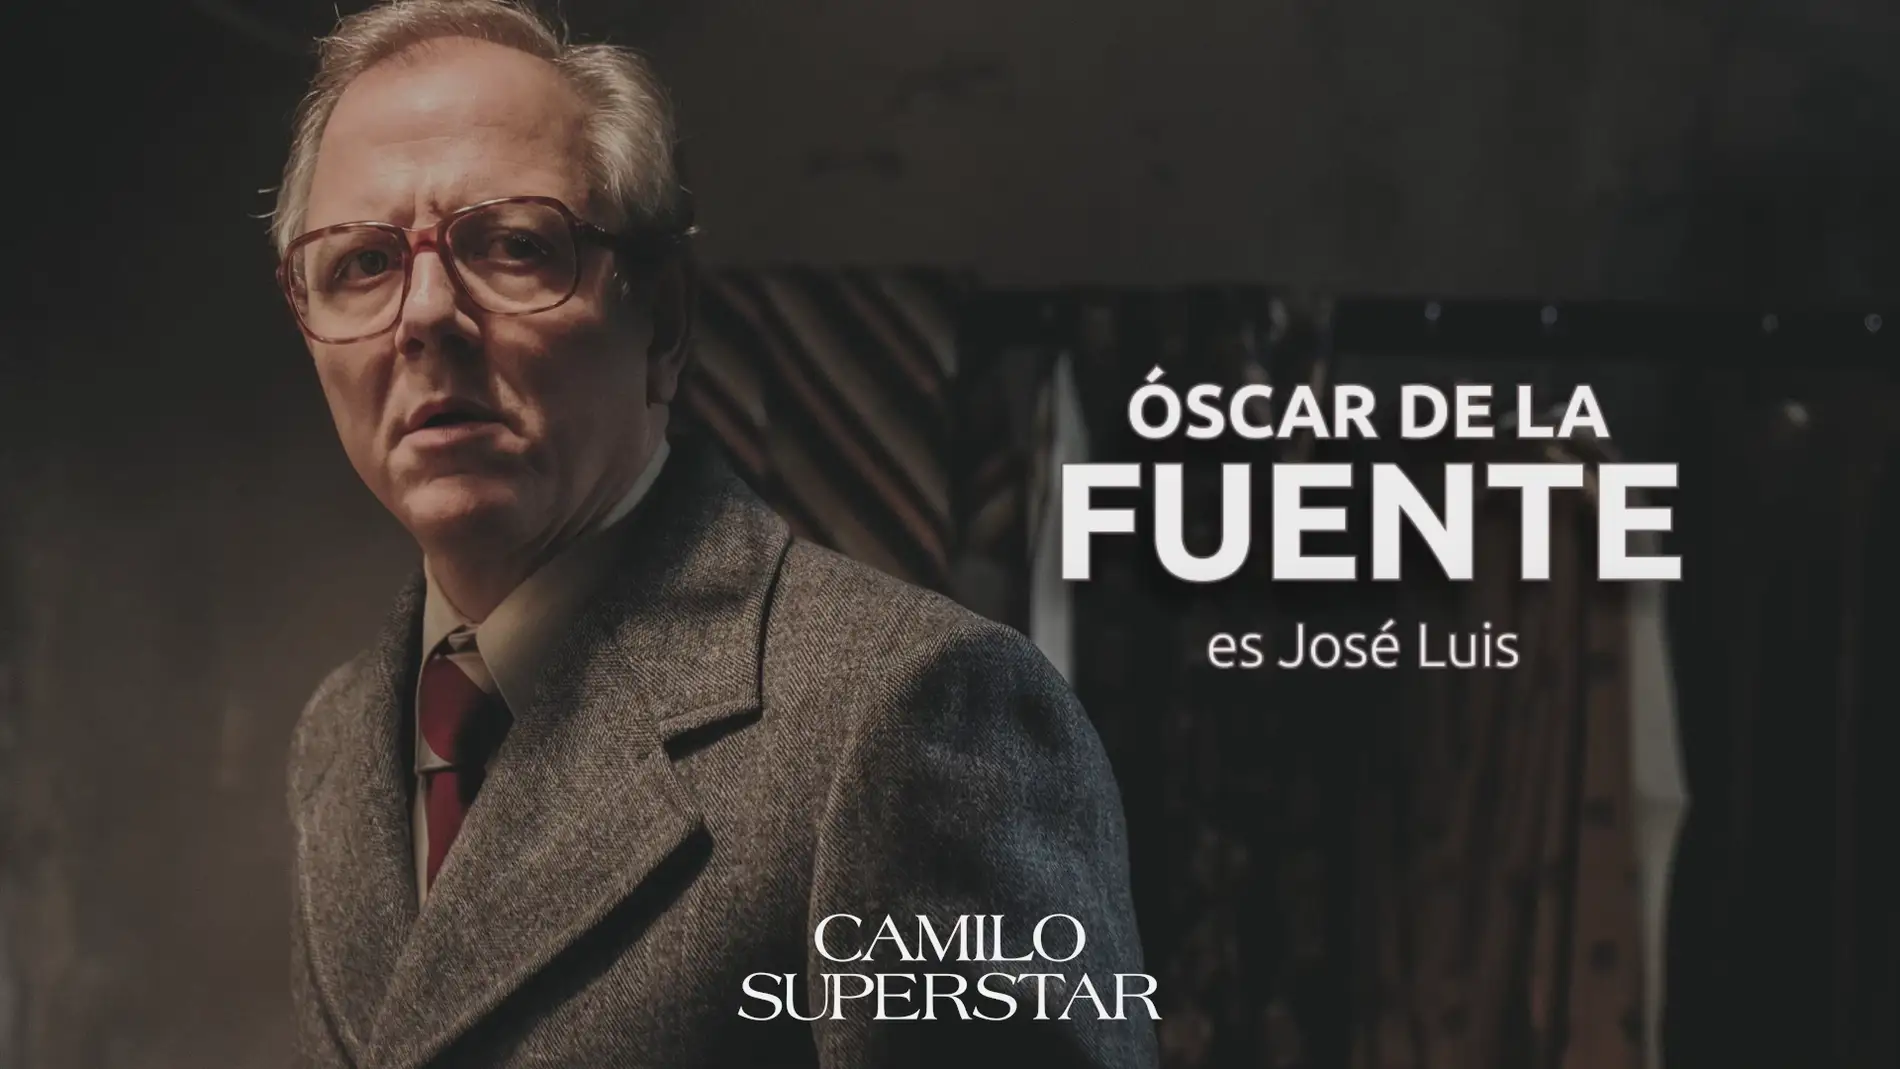 Óscar de la Fuente: "José Luis es el representante de la primera faceta artística de Camilo"